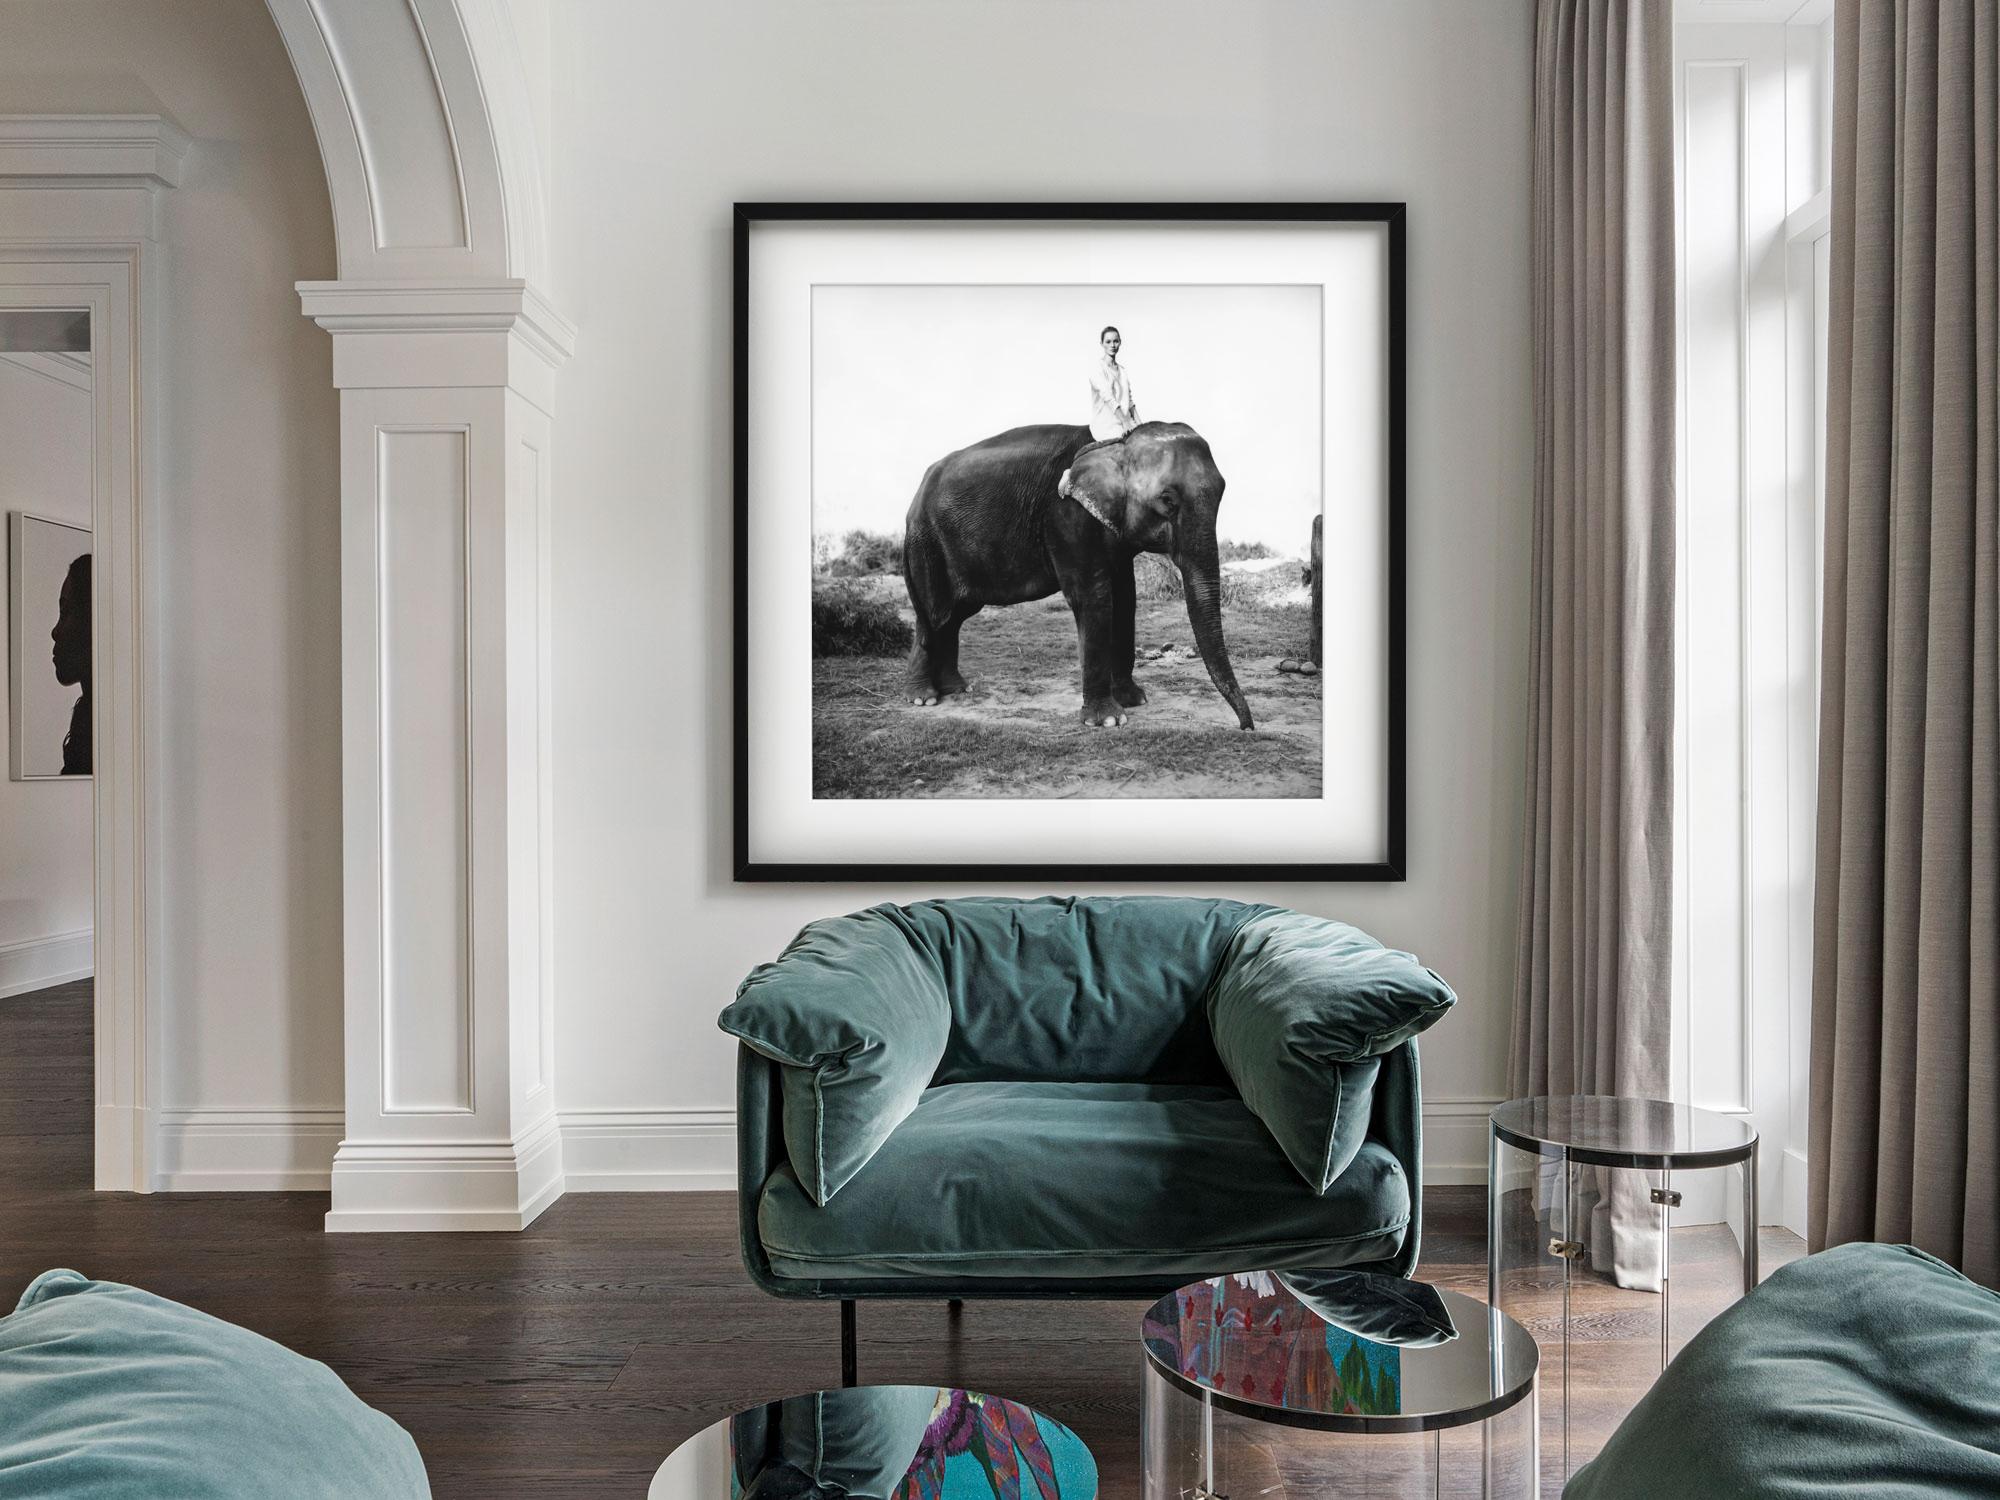 Kate Moss in Nepal, britische Vogue – Modell auf Elefanten, Kunstfotografie 1993 (Zeitgenössisch), Photograph, von Arthur Elgort